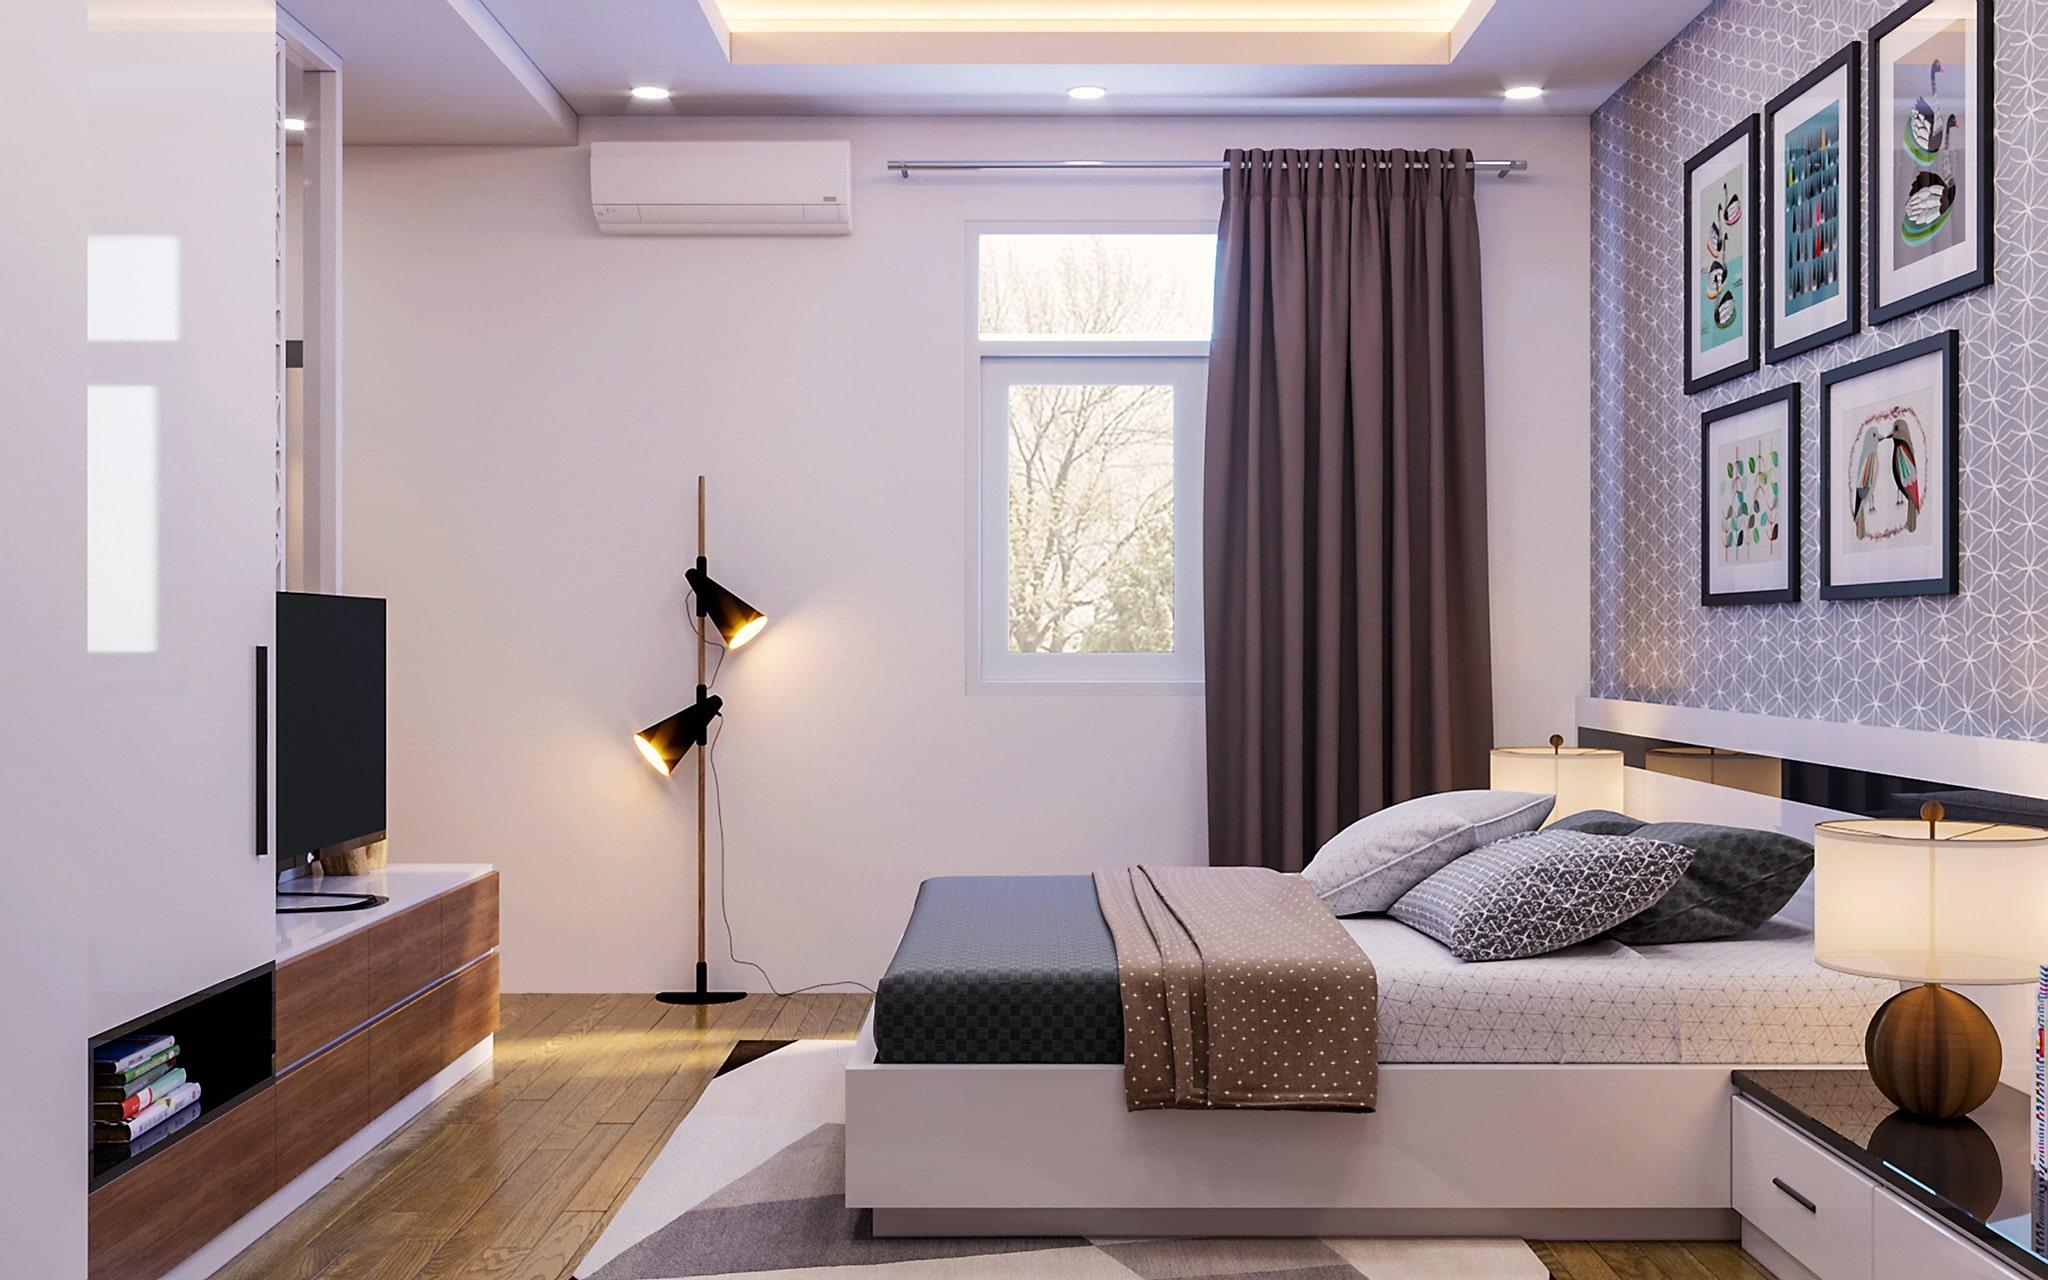 Những điểm cần lưu ý khi lựa chọn đèn LED chiếu sáng cho căn hộ chung cư